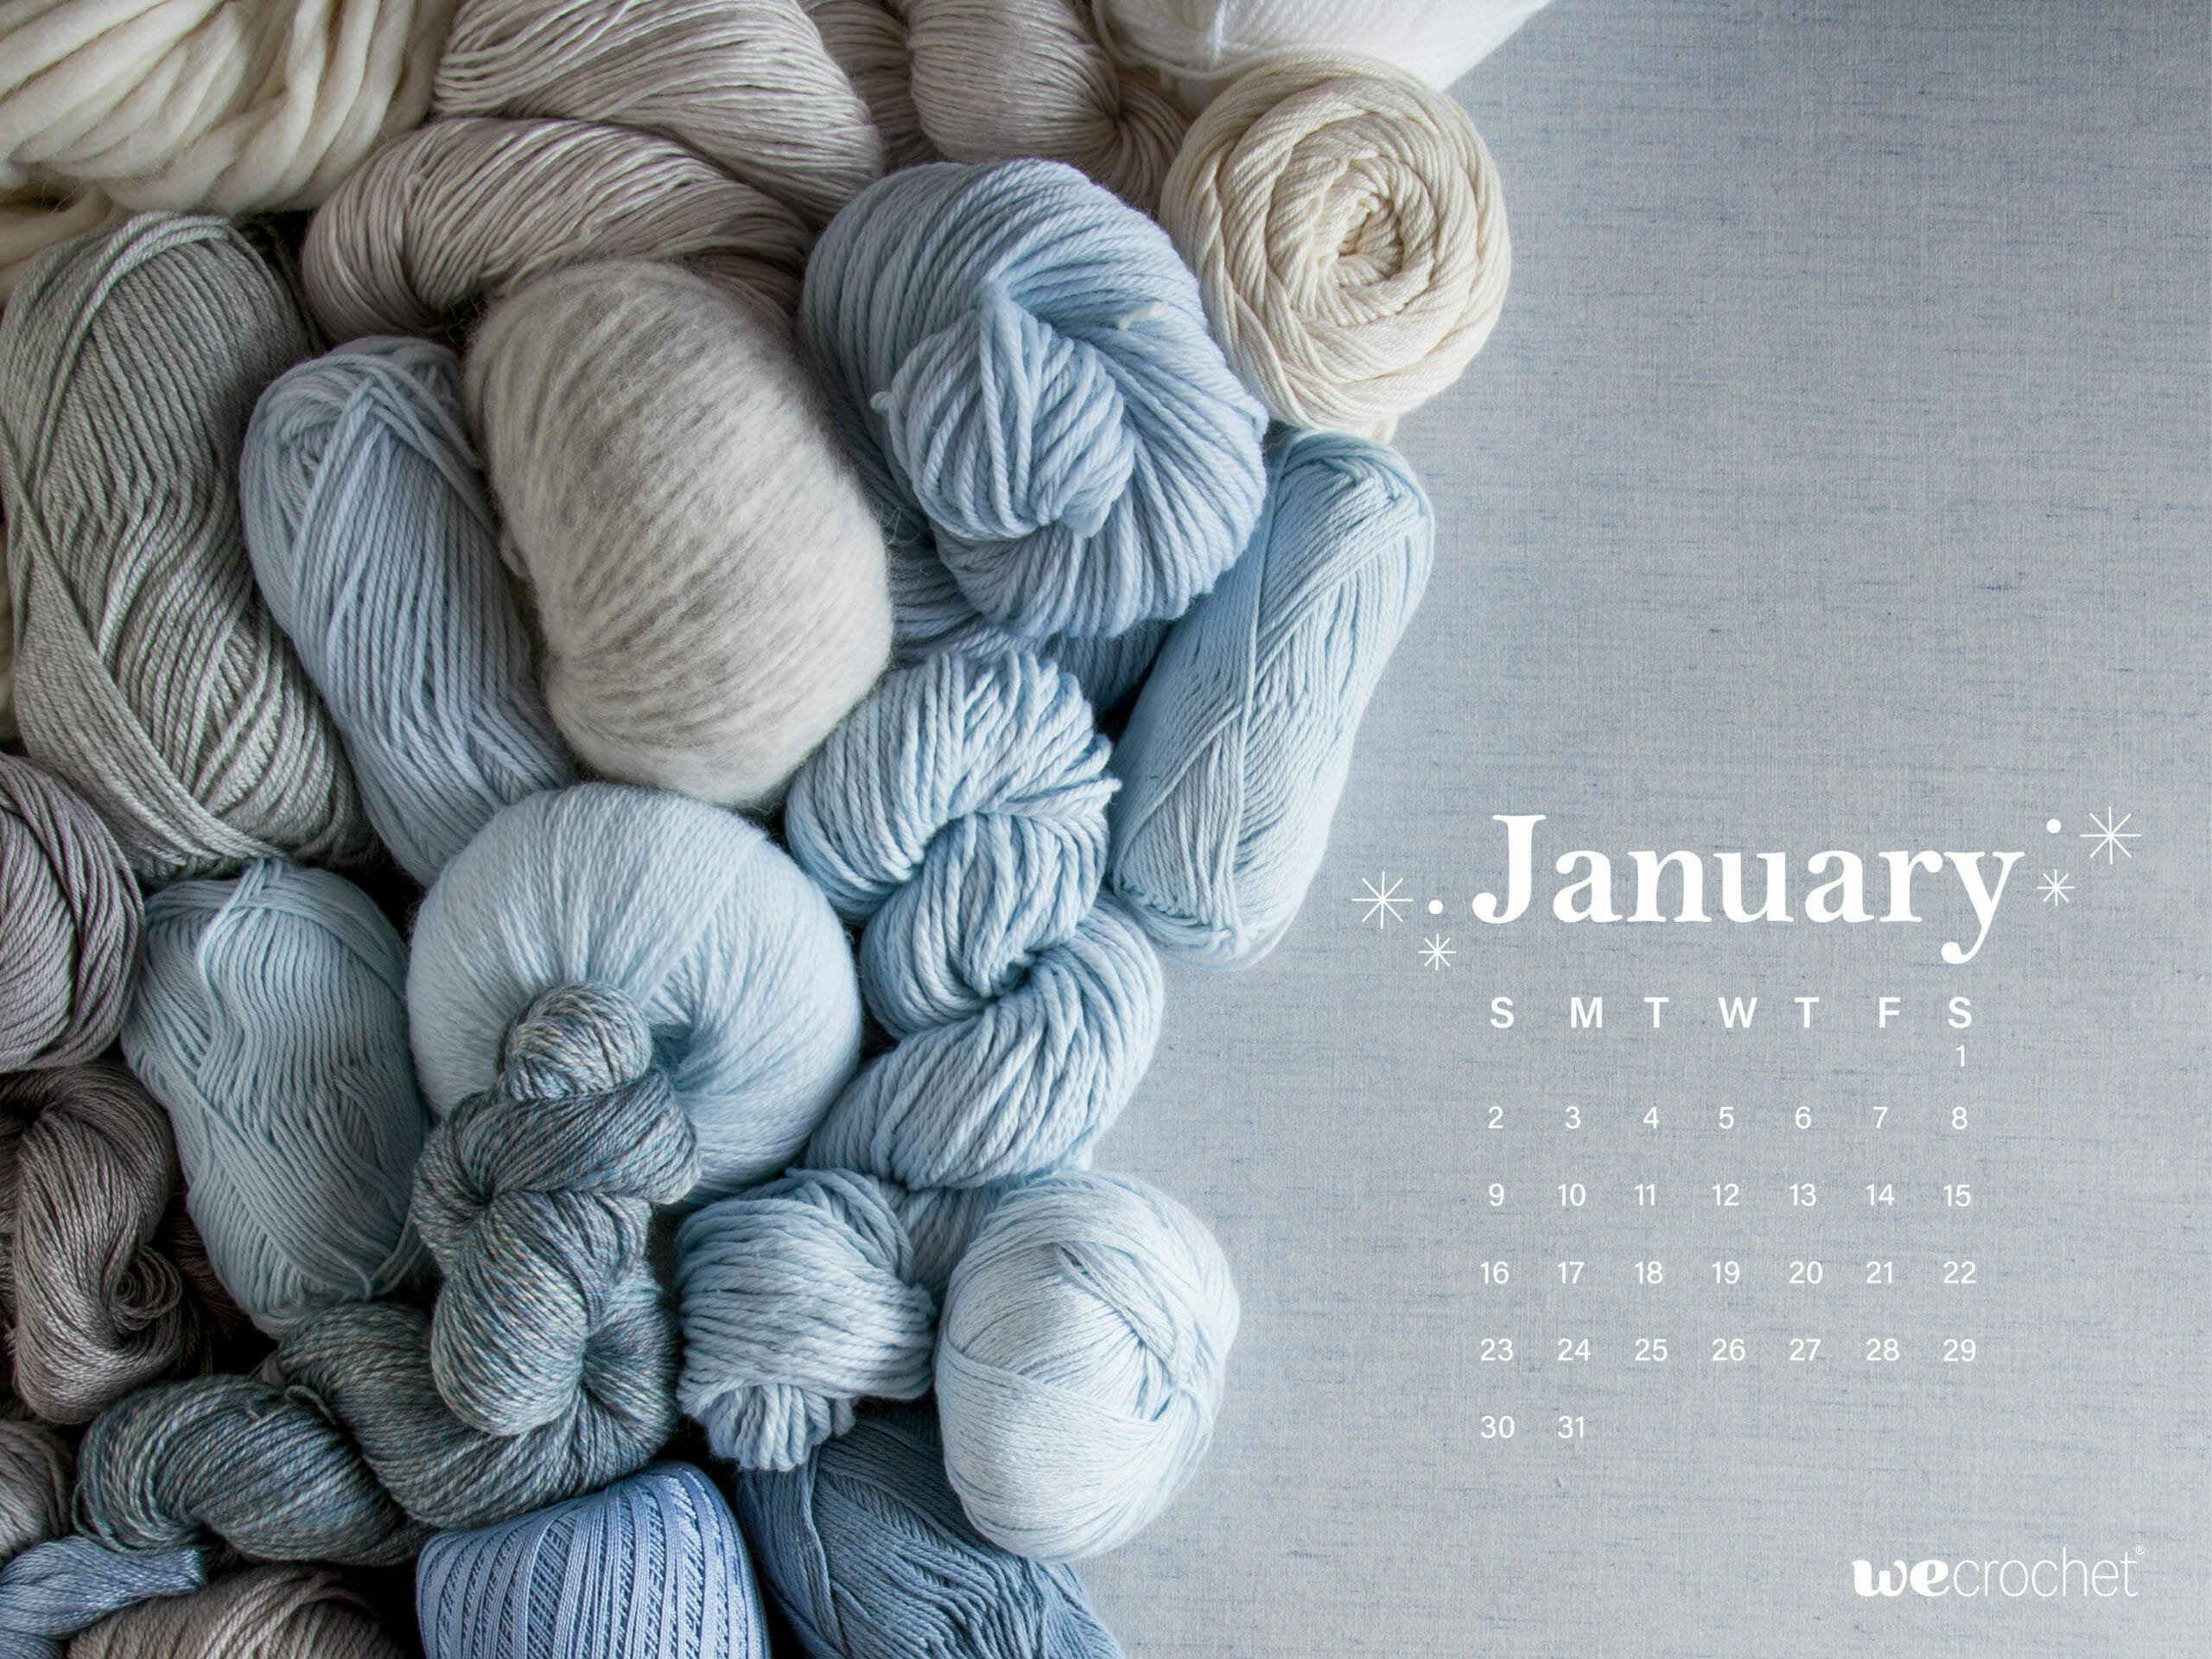 January Calendar Wallpaper Wecrochet Staff